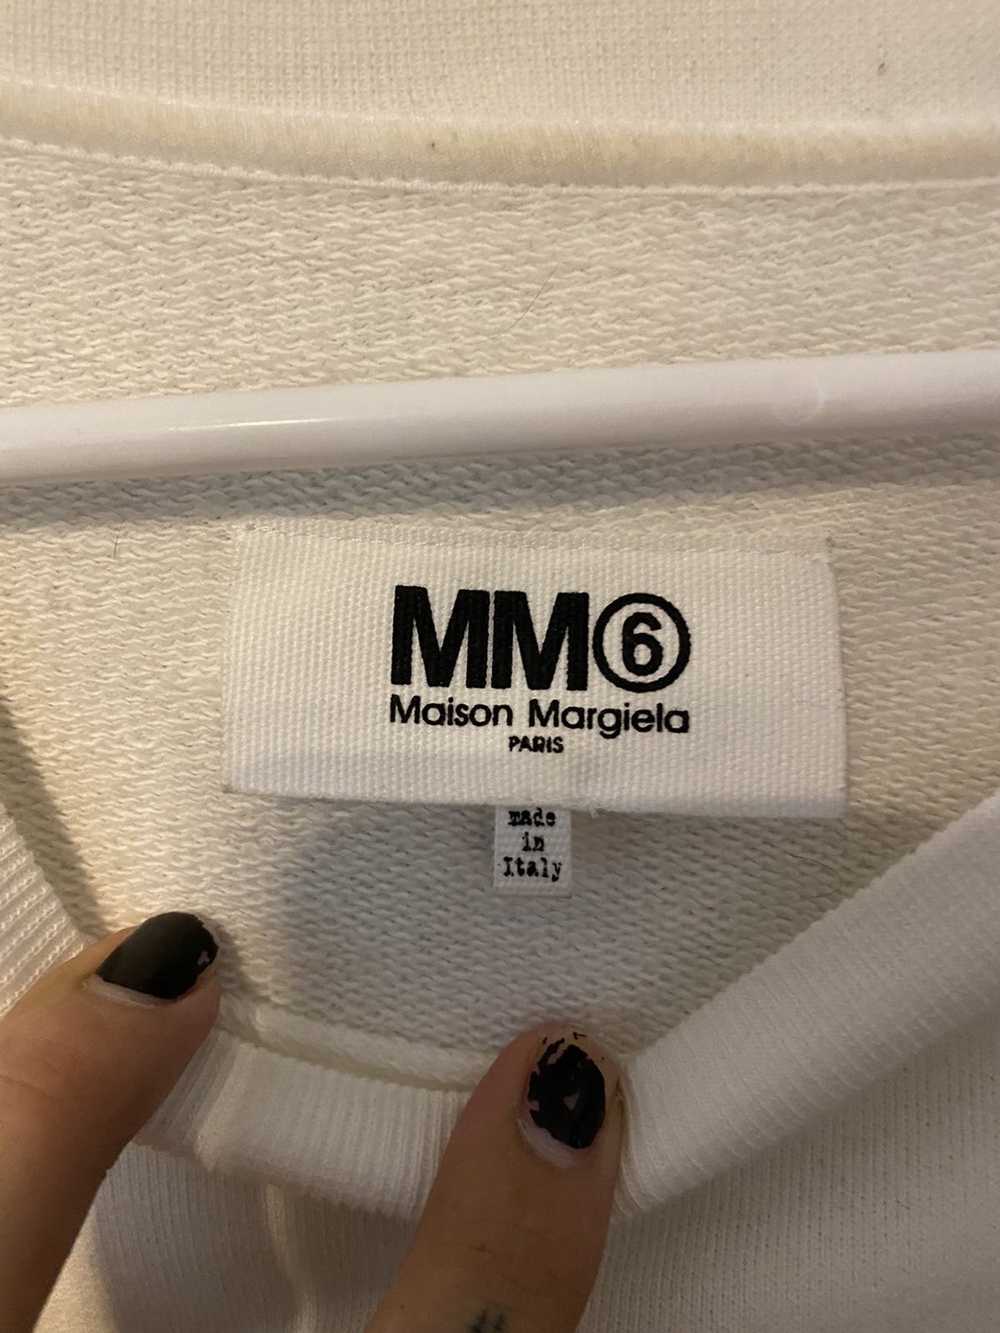 Maison Margiela White sweatshirt with Black Fring… - image 2